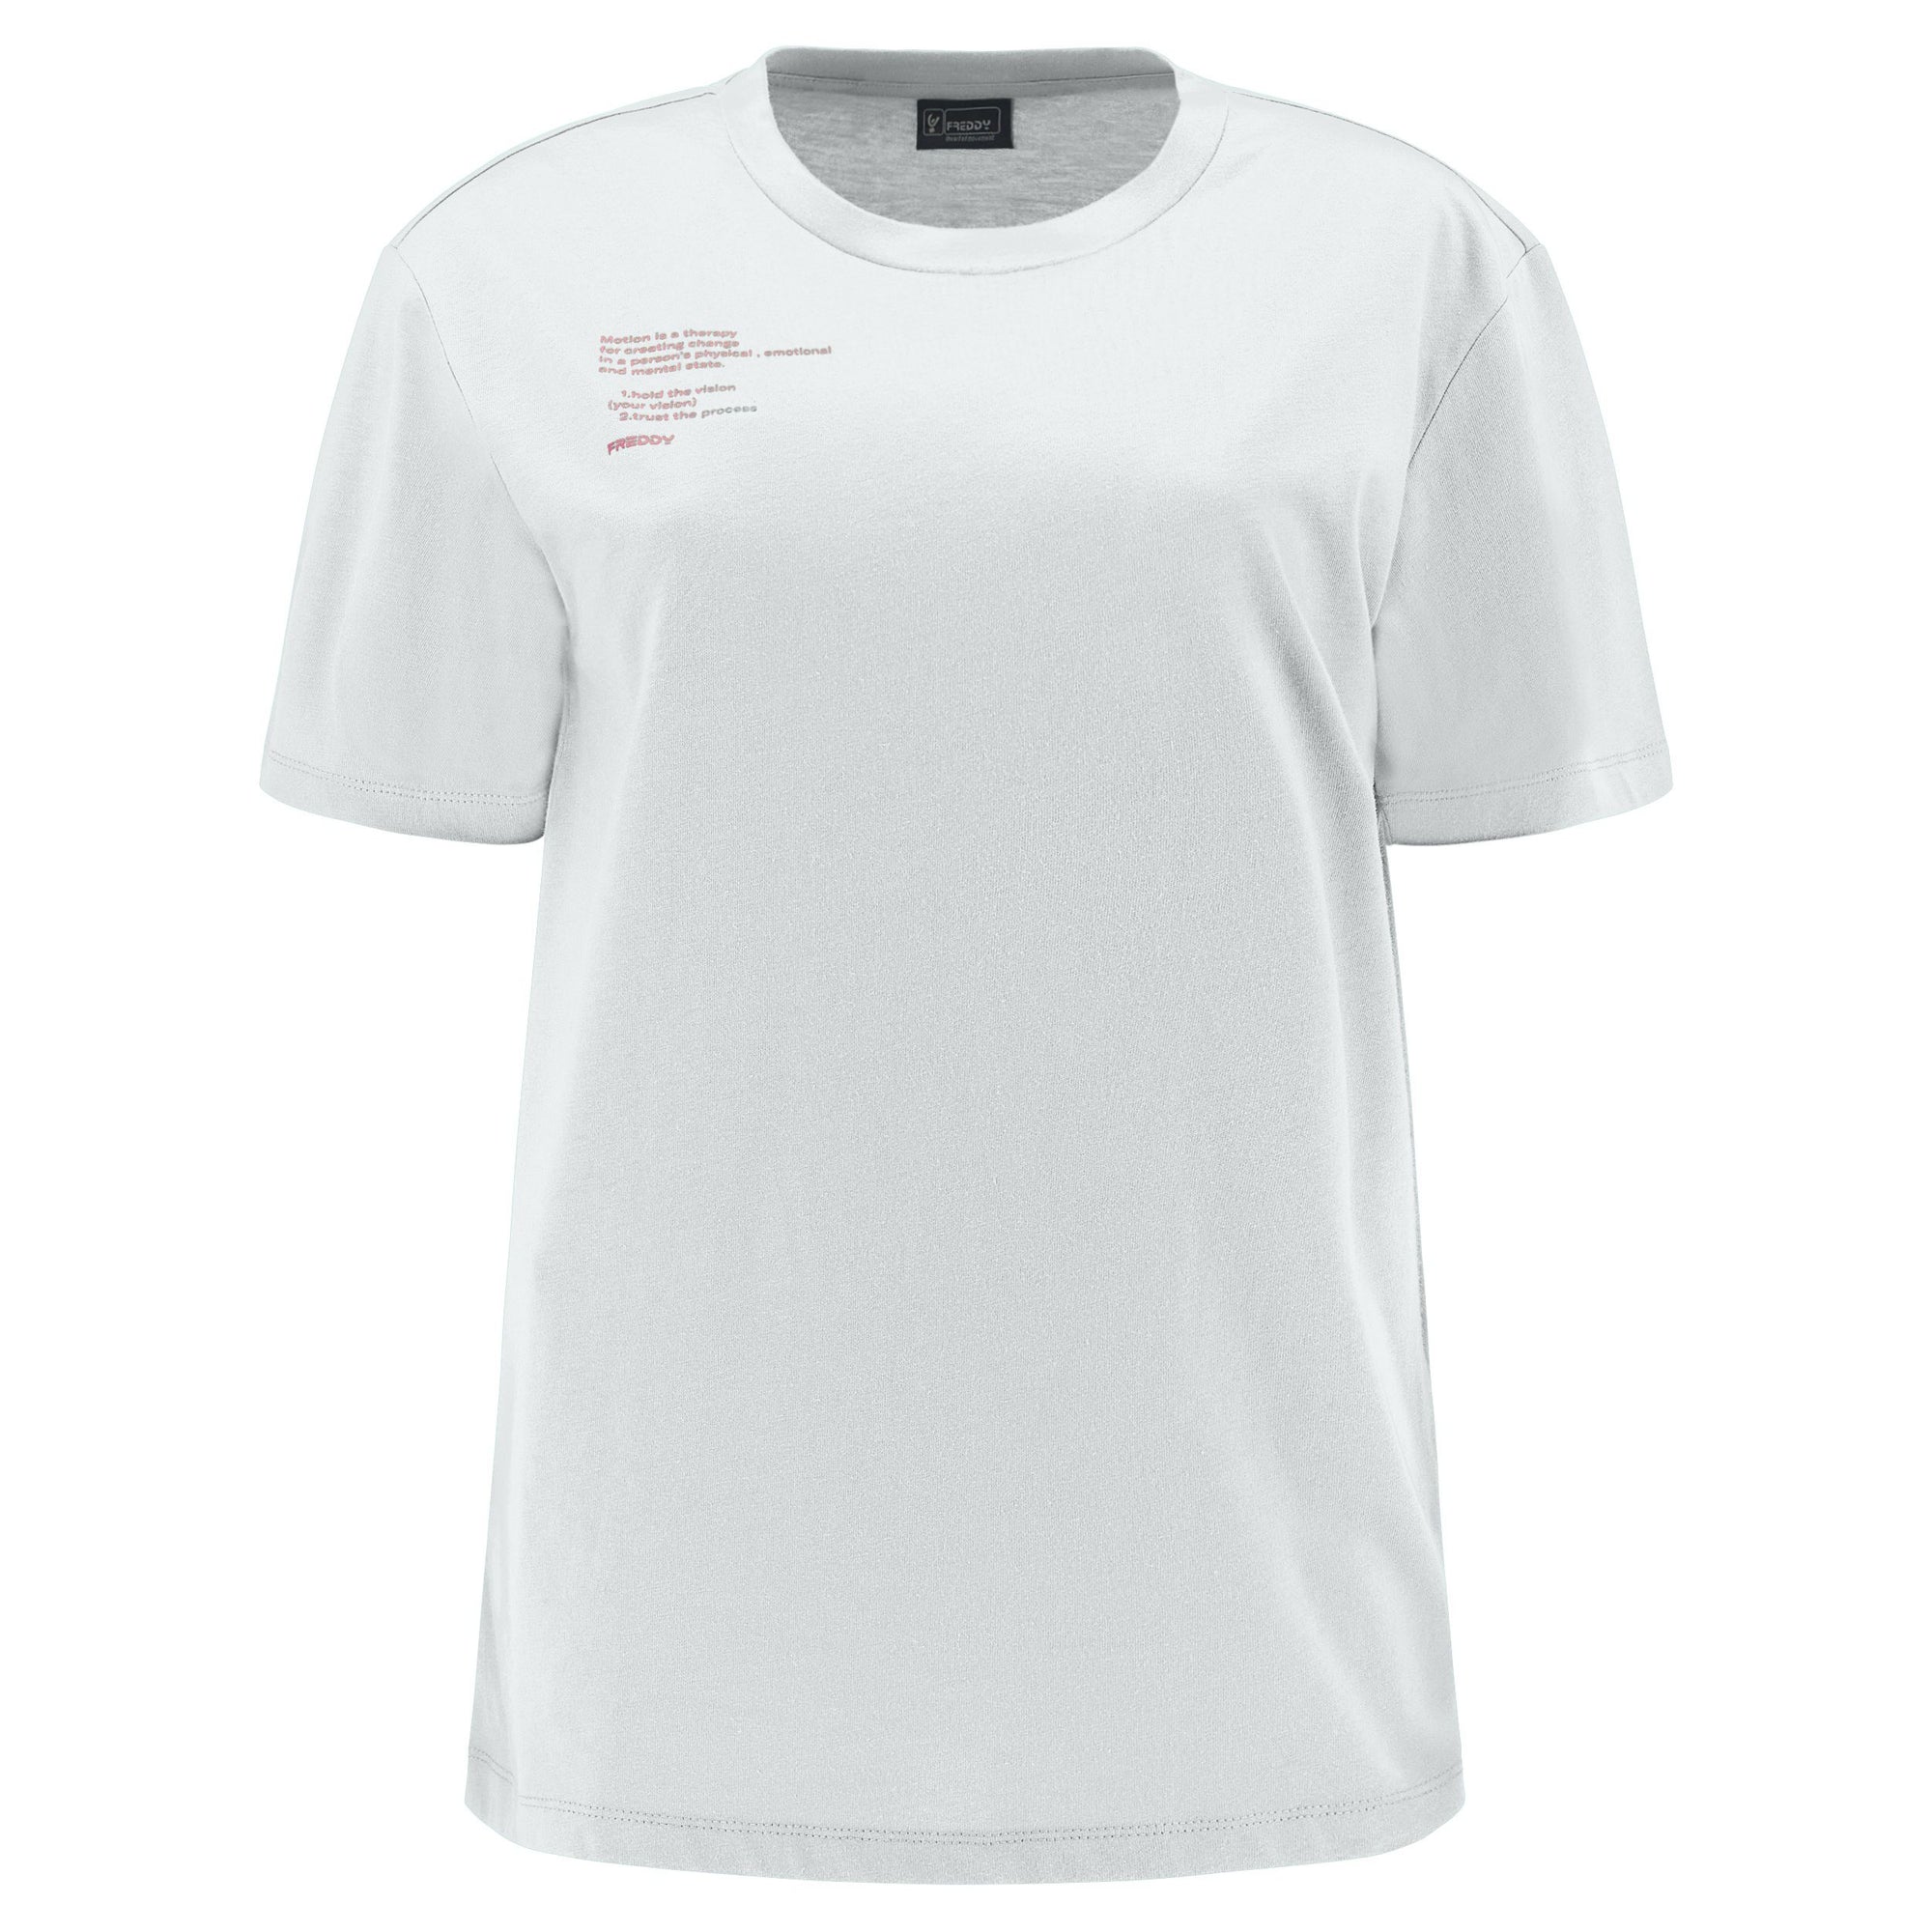 Freddy T-shirt da donna in cotone e stampa lettering S3WGZT4 W71 white